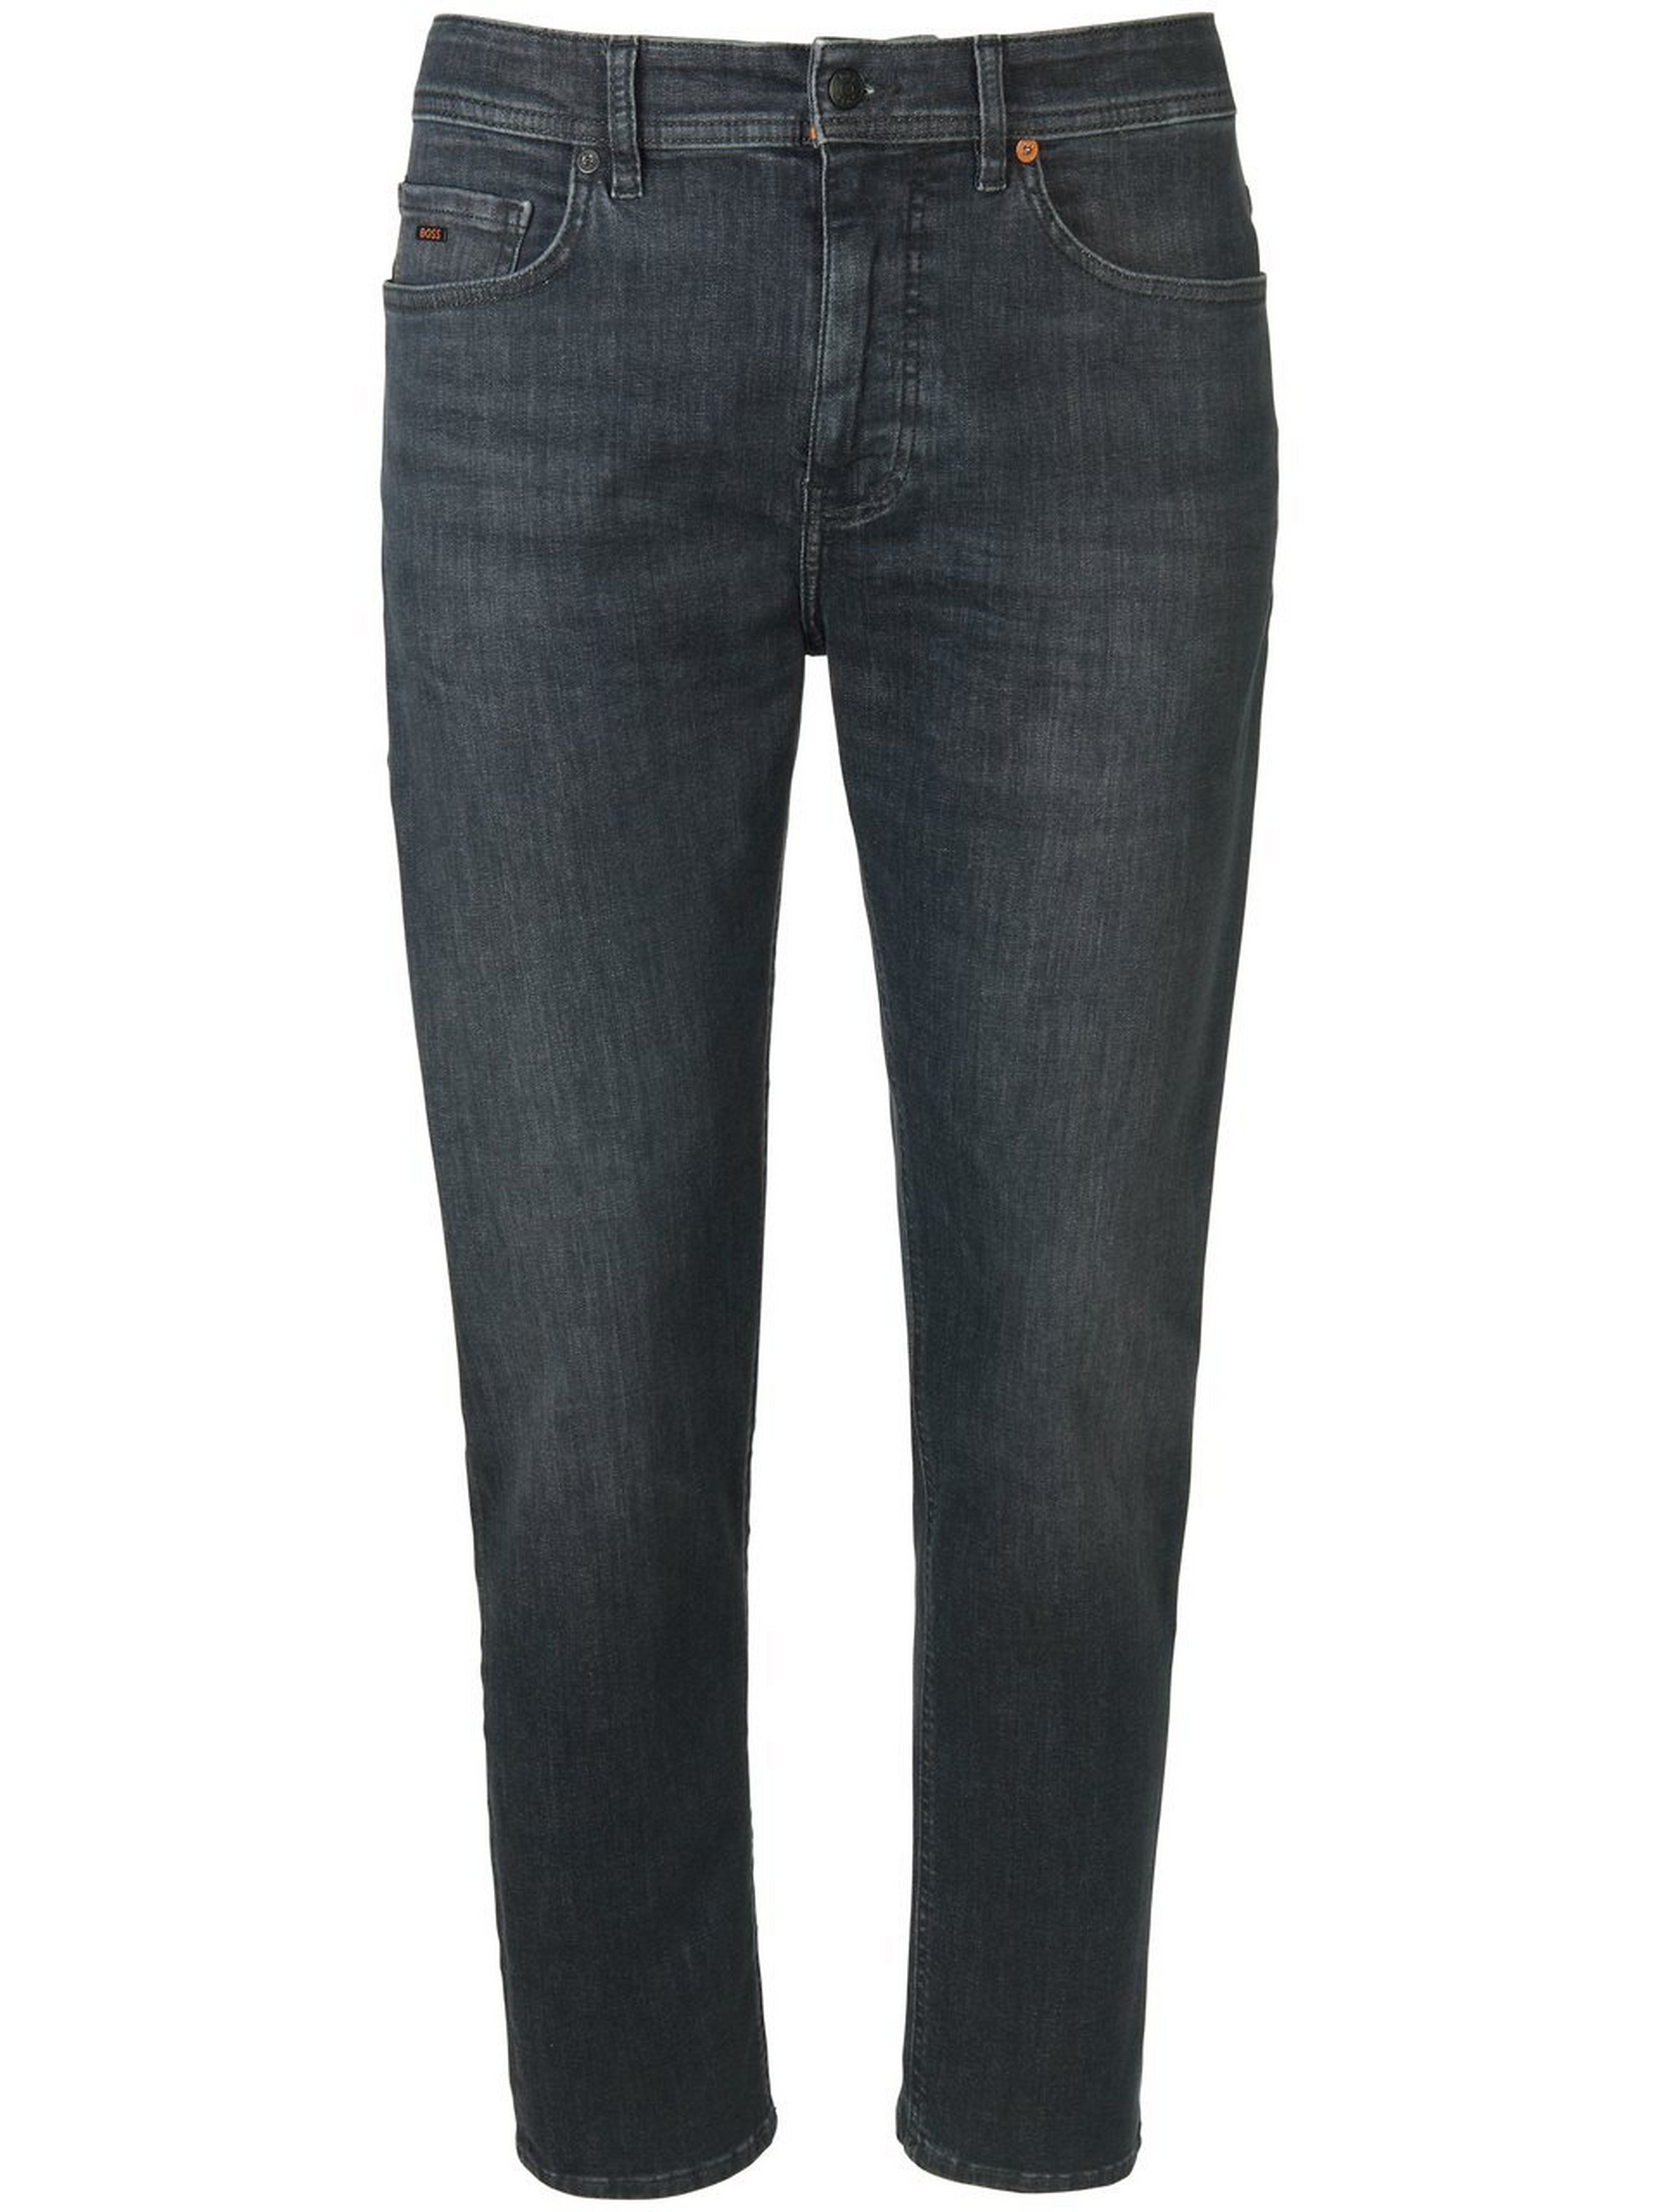 Jeans Taber Zip BC-P-1 inchlengte 30 Van BOSS grijs